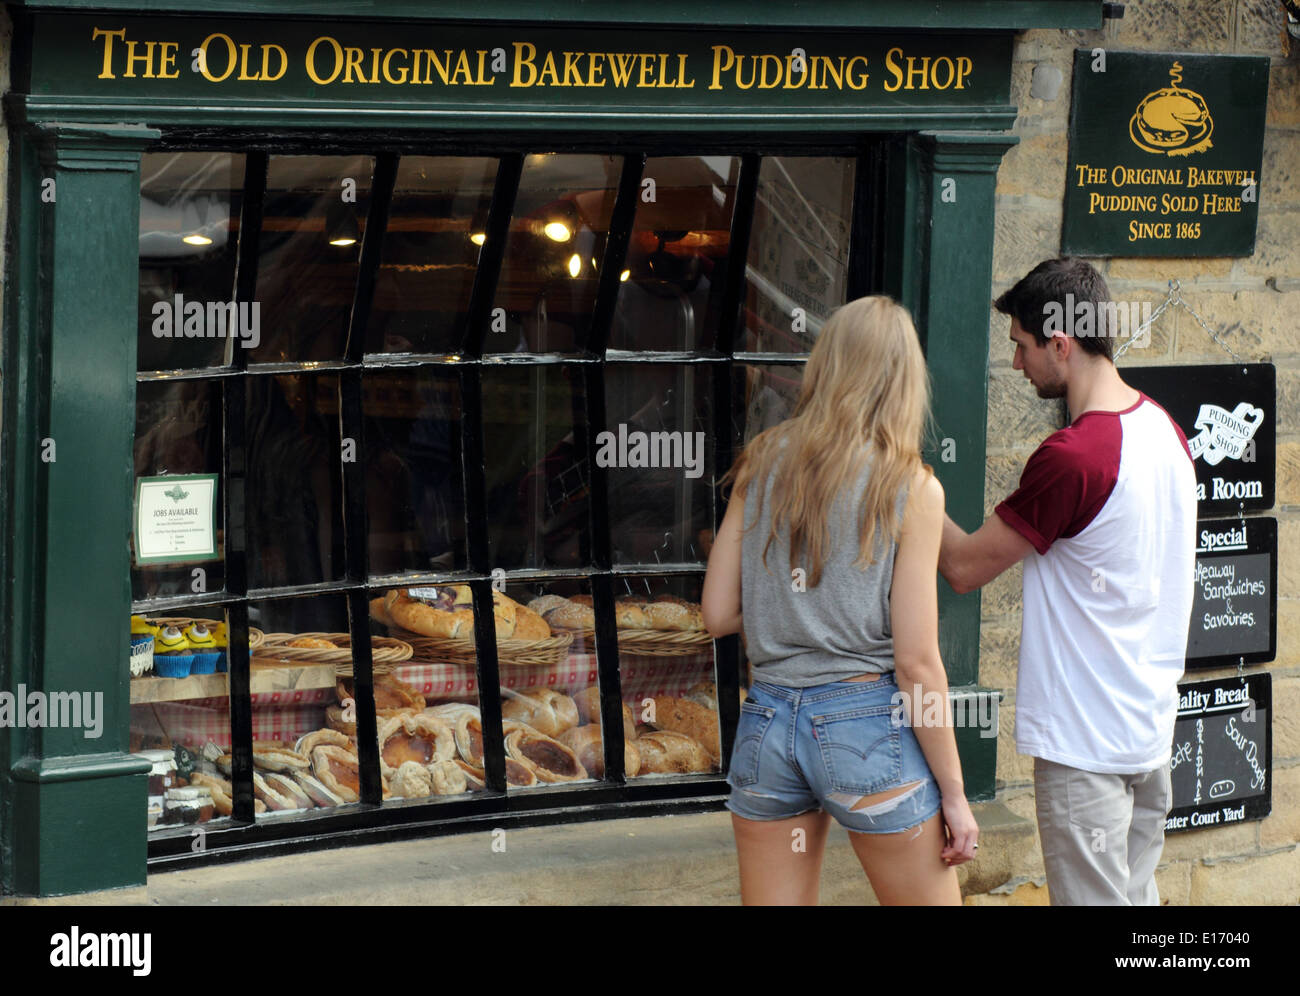 Pause touristes à regarder dans l'ancienne boutique de pudding Bakewell original de Bakewell, Peak District, England, UK Banque D'Images